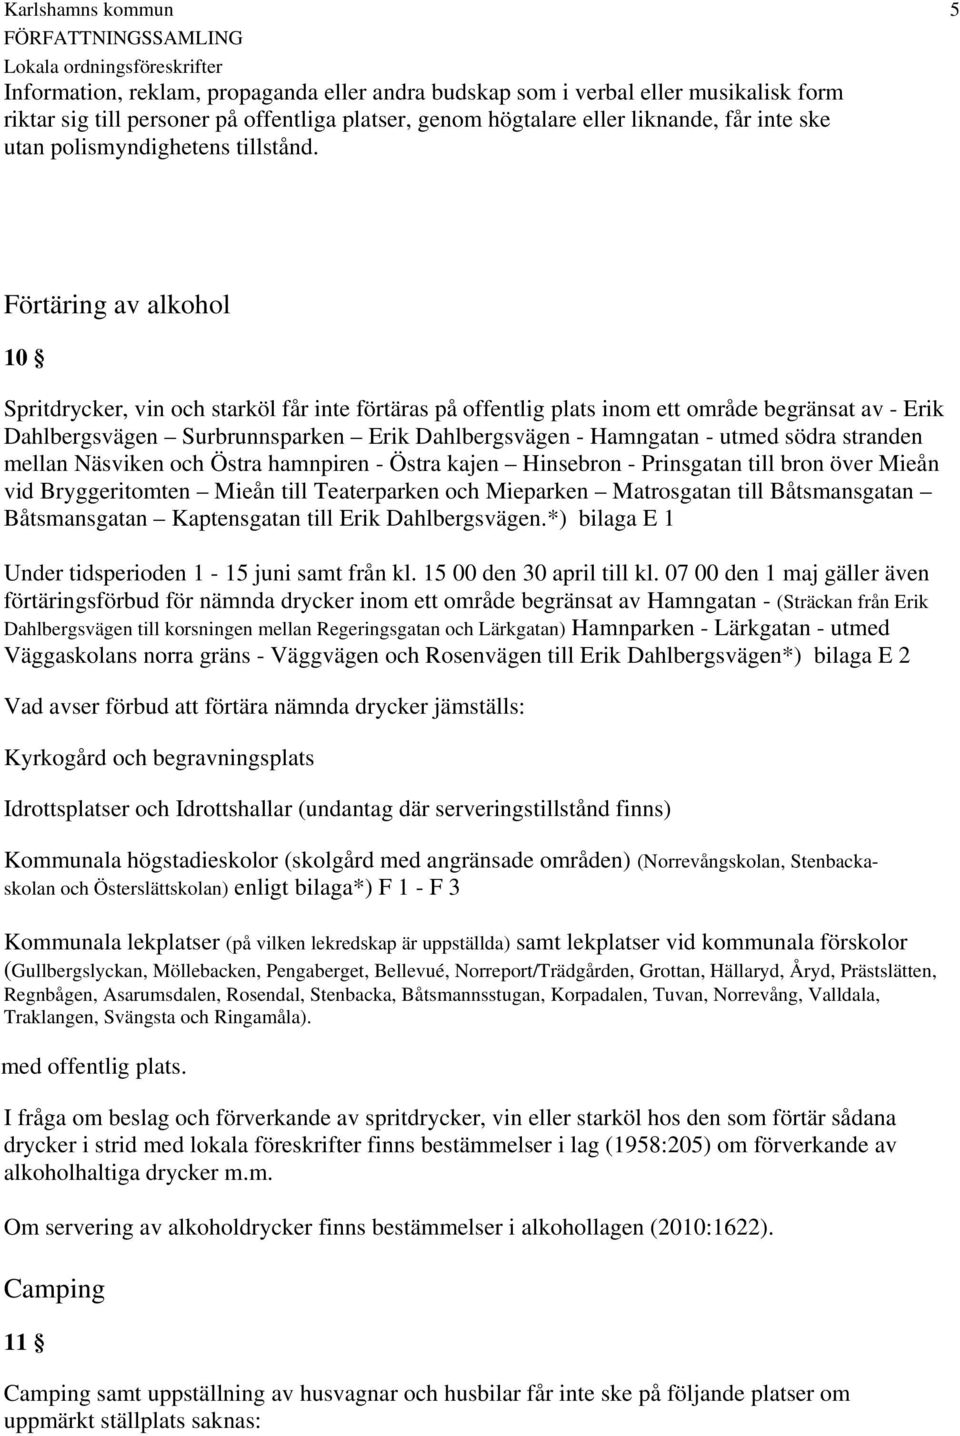 5 Förtäring av alkohol 10 Spritdrycker, vin och starköl får inte förtäras på offentlig plats inom ett område begränsat av - Erik Dahlbergsvägen Surbrunnsparken Erik Dahlbergsvägen - Hamngatan - utmed